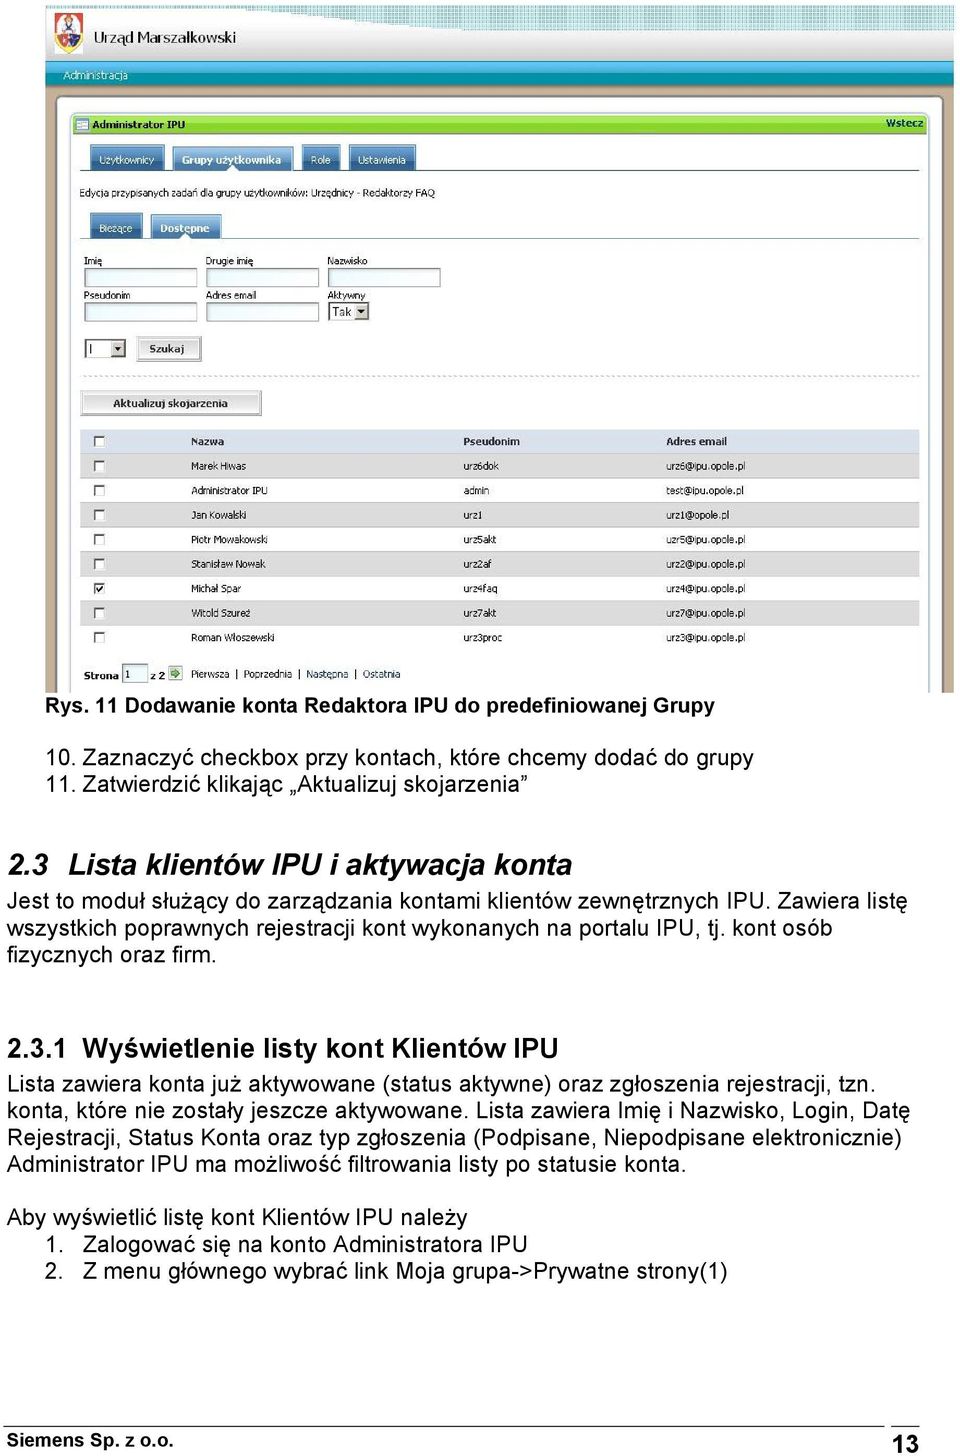 kont osób fizycznych oraz firm. 2.3.1 Wyświetlenie listy kont Klientów IPU Lista zawiera konta już aktywowane (status aktywne) oraz zgłoszenia rejestracji, tzn.